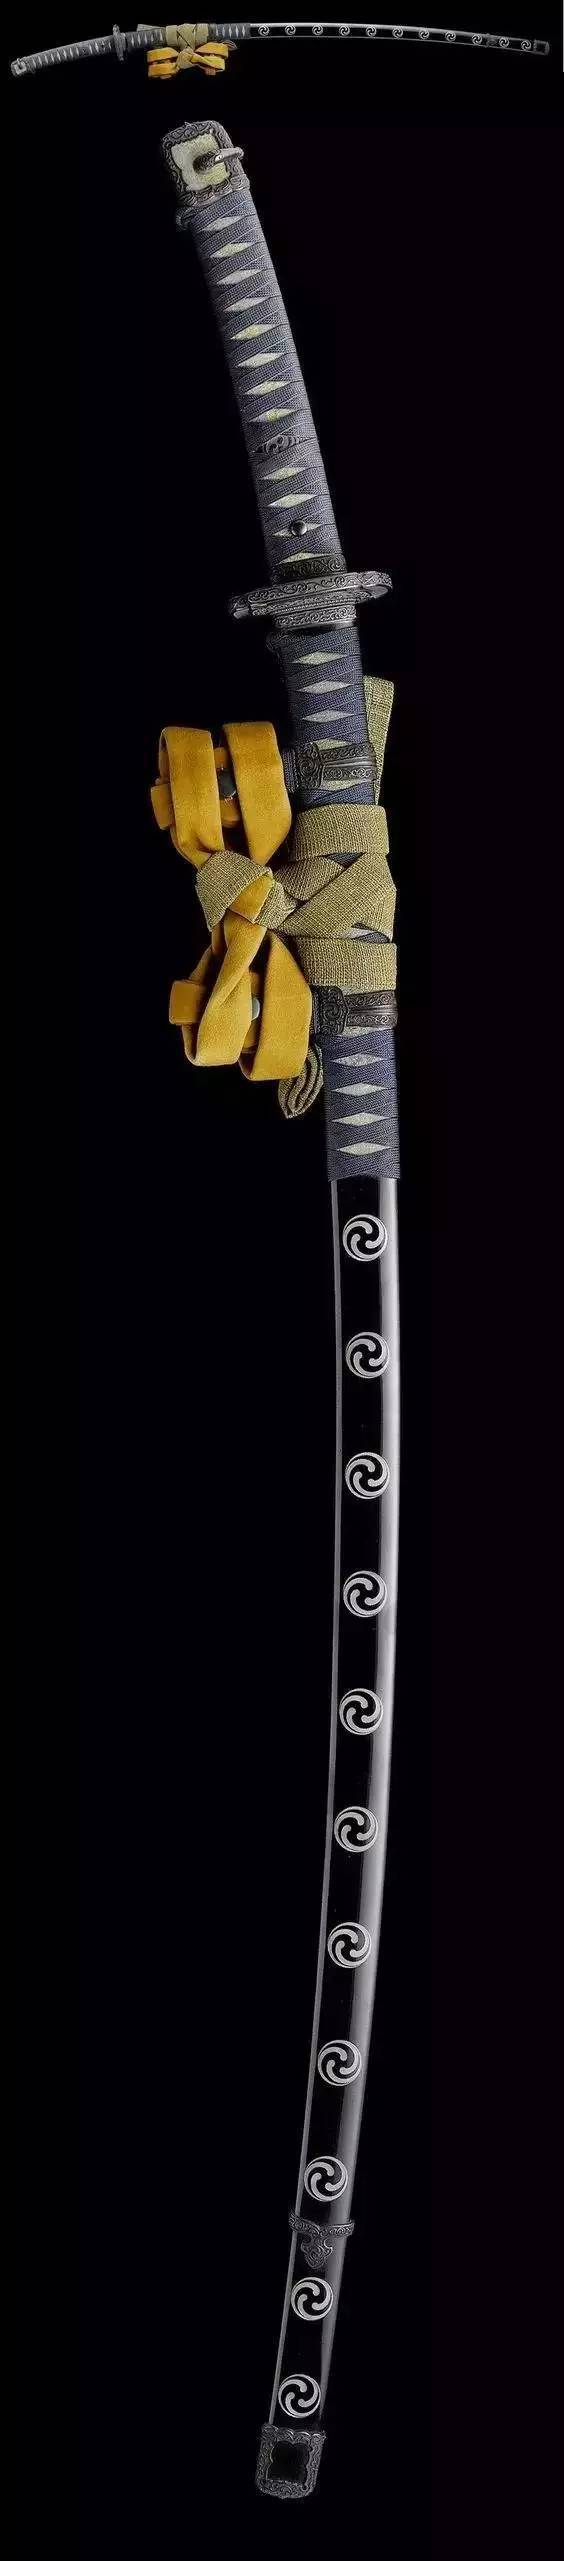 日本镰仓时代末期的大型刀:大太刀,野太刀